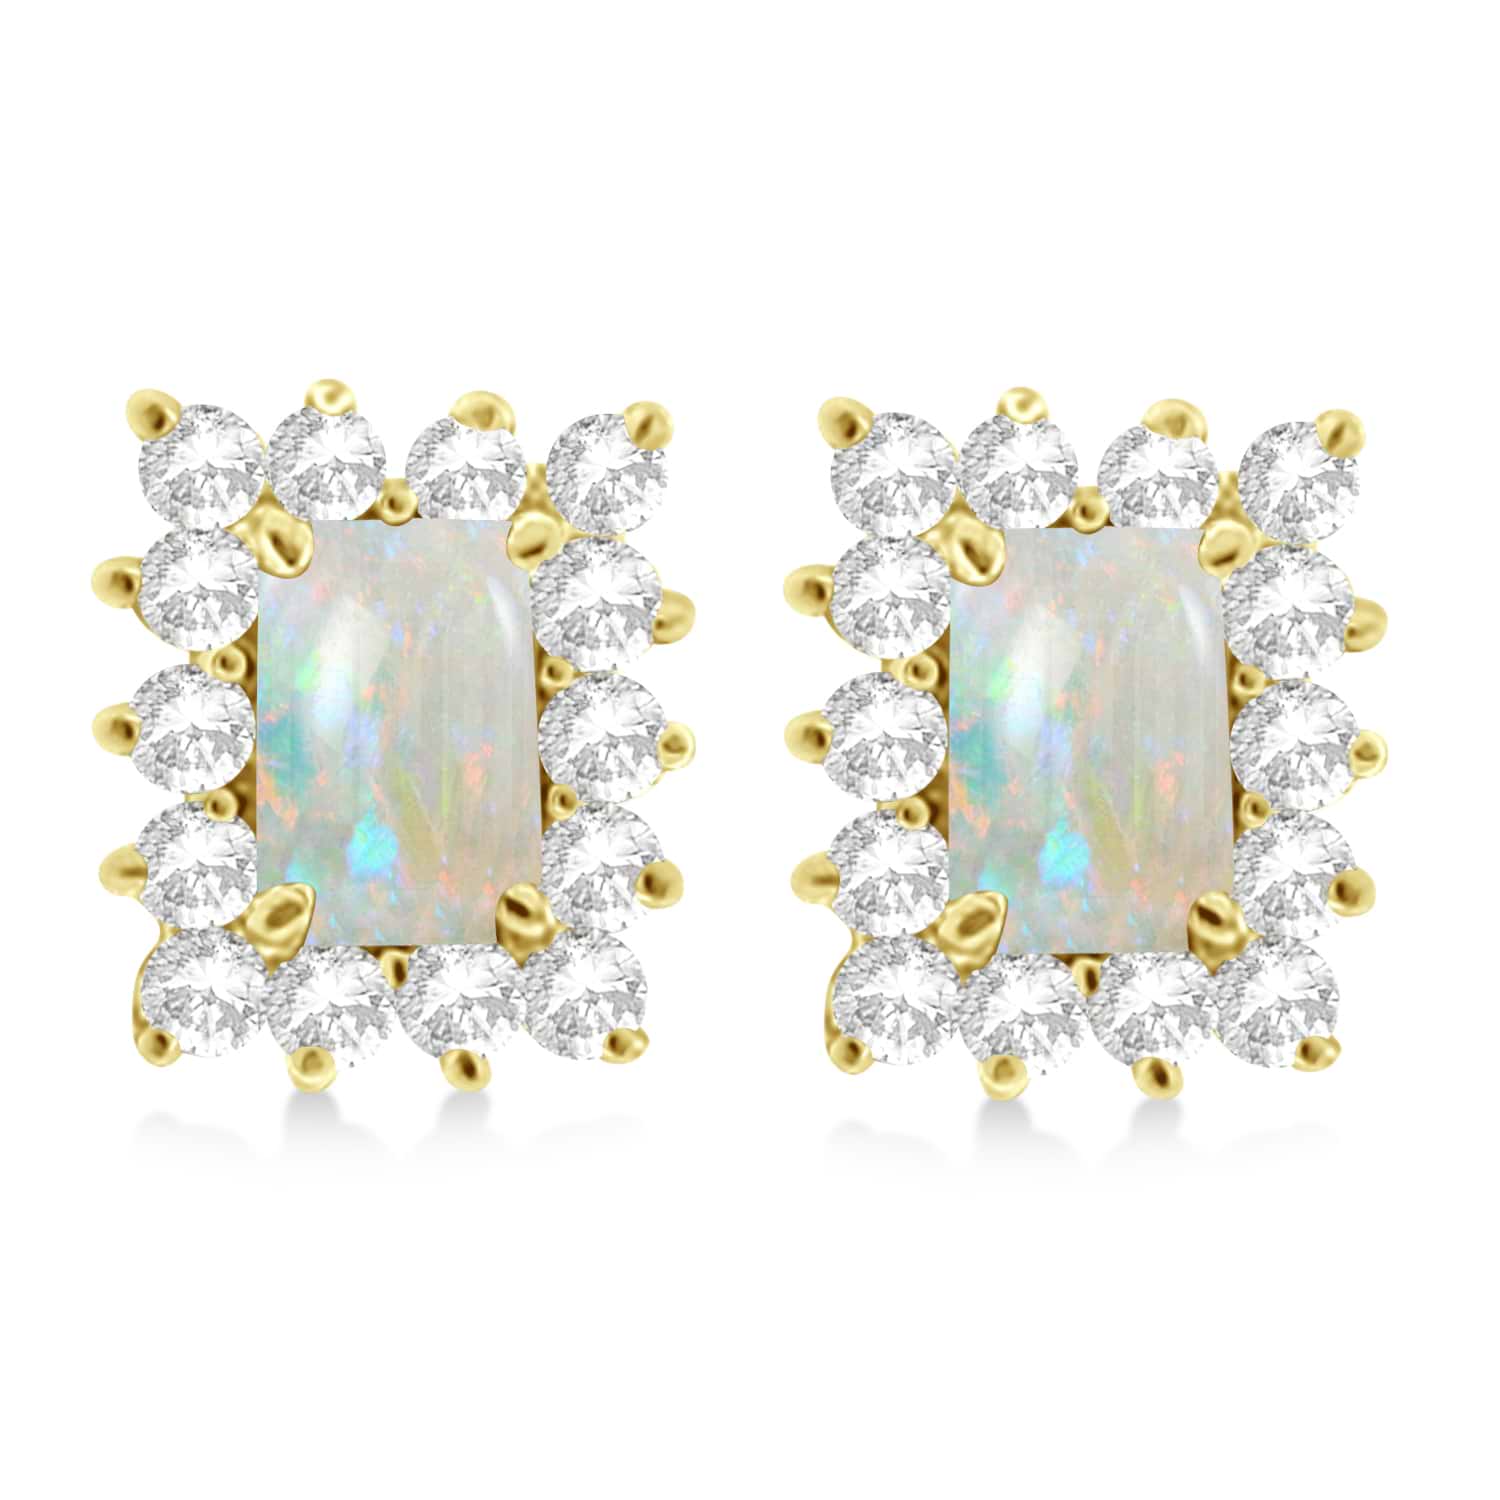 Emerald-Cut Opal & Diamond Stud Earrings 14k Yellow Gold (1.80ctw)